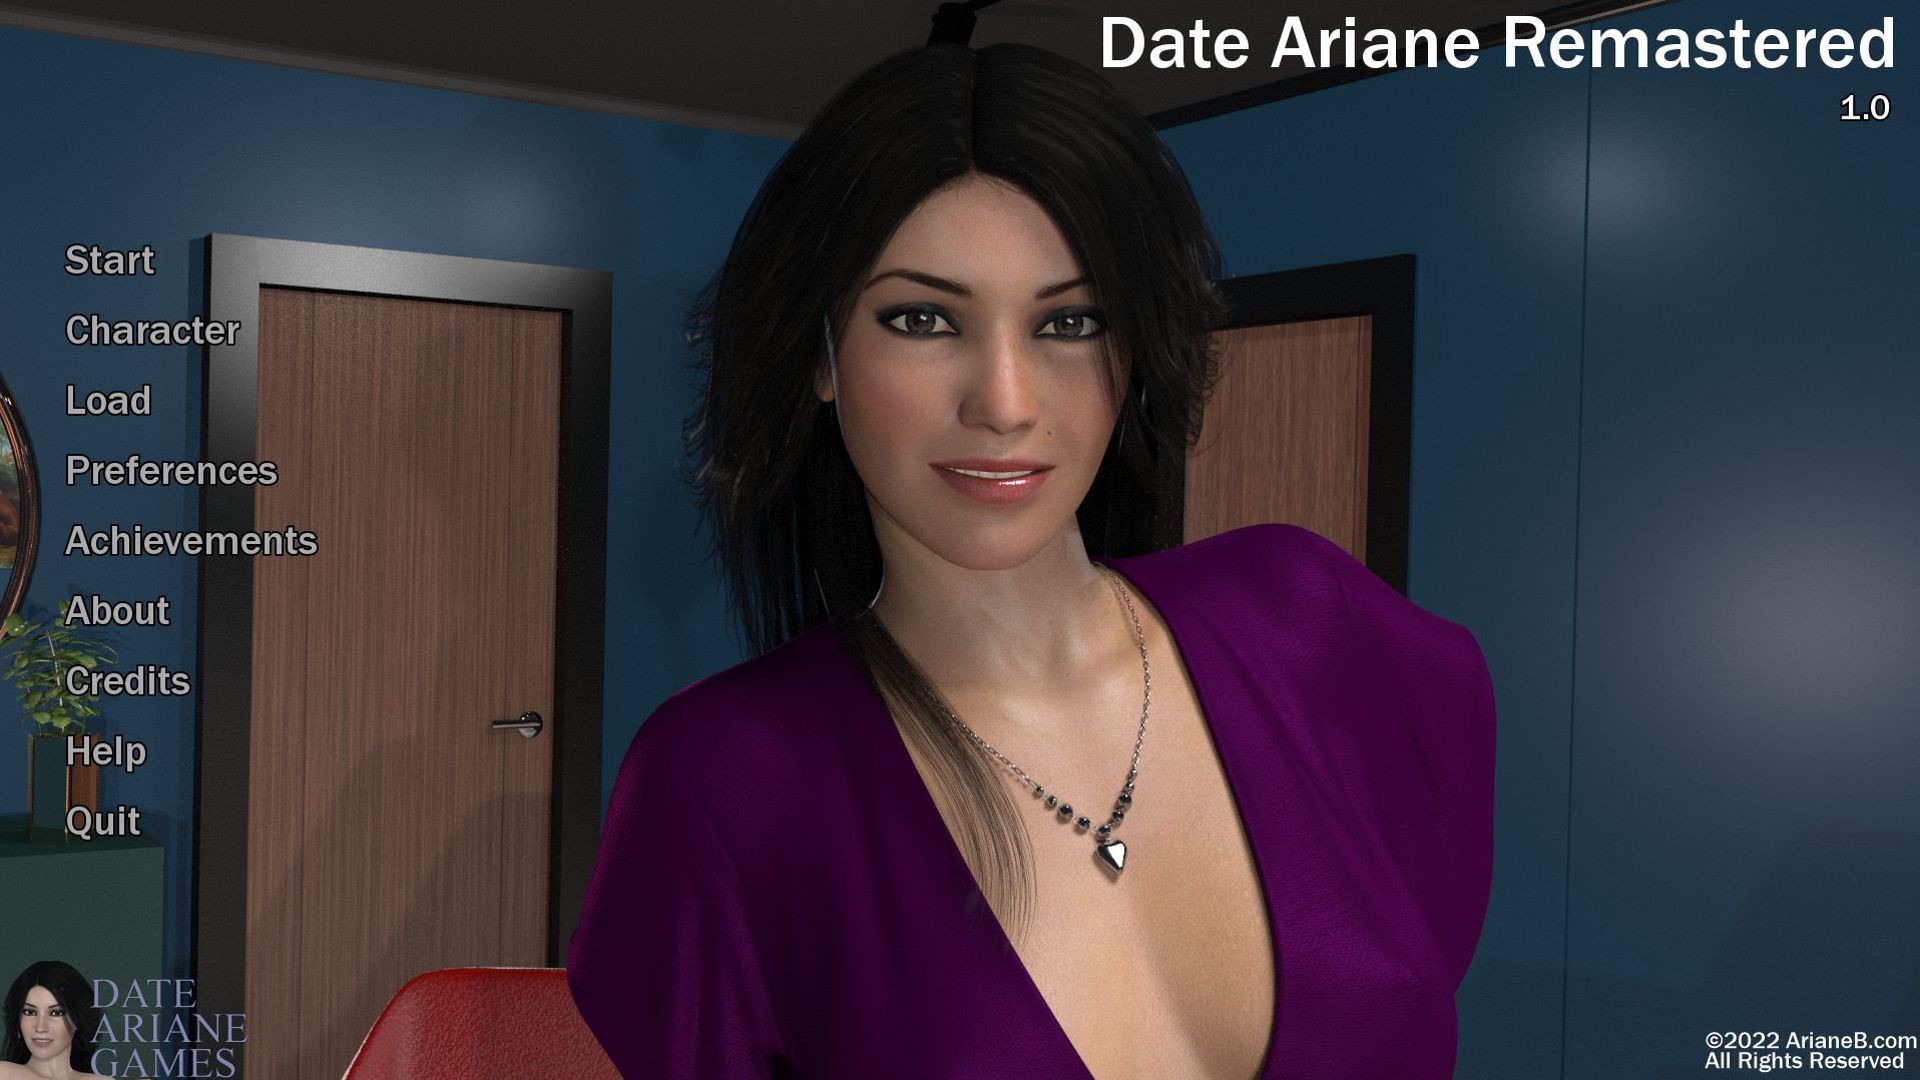 Date Ariane Remastered op Steam